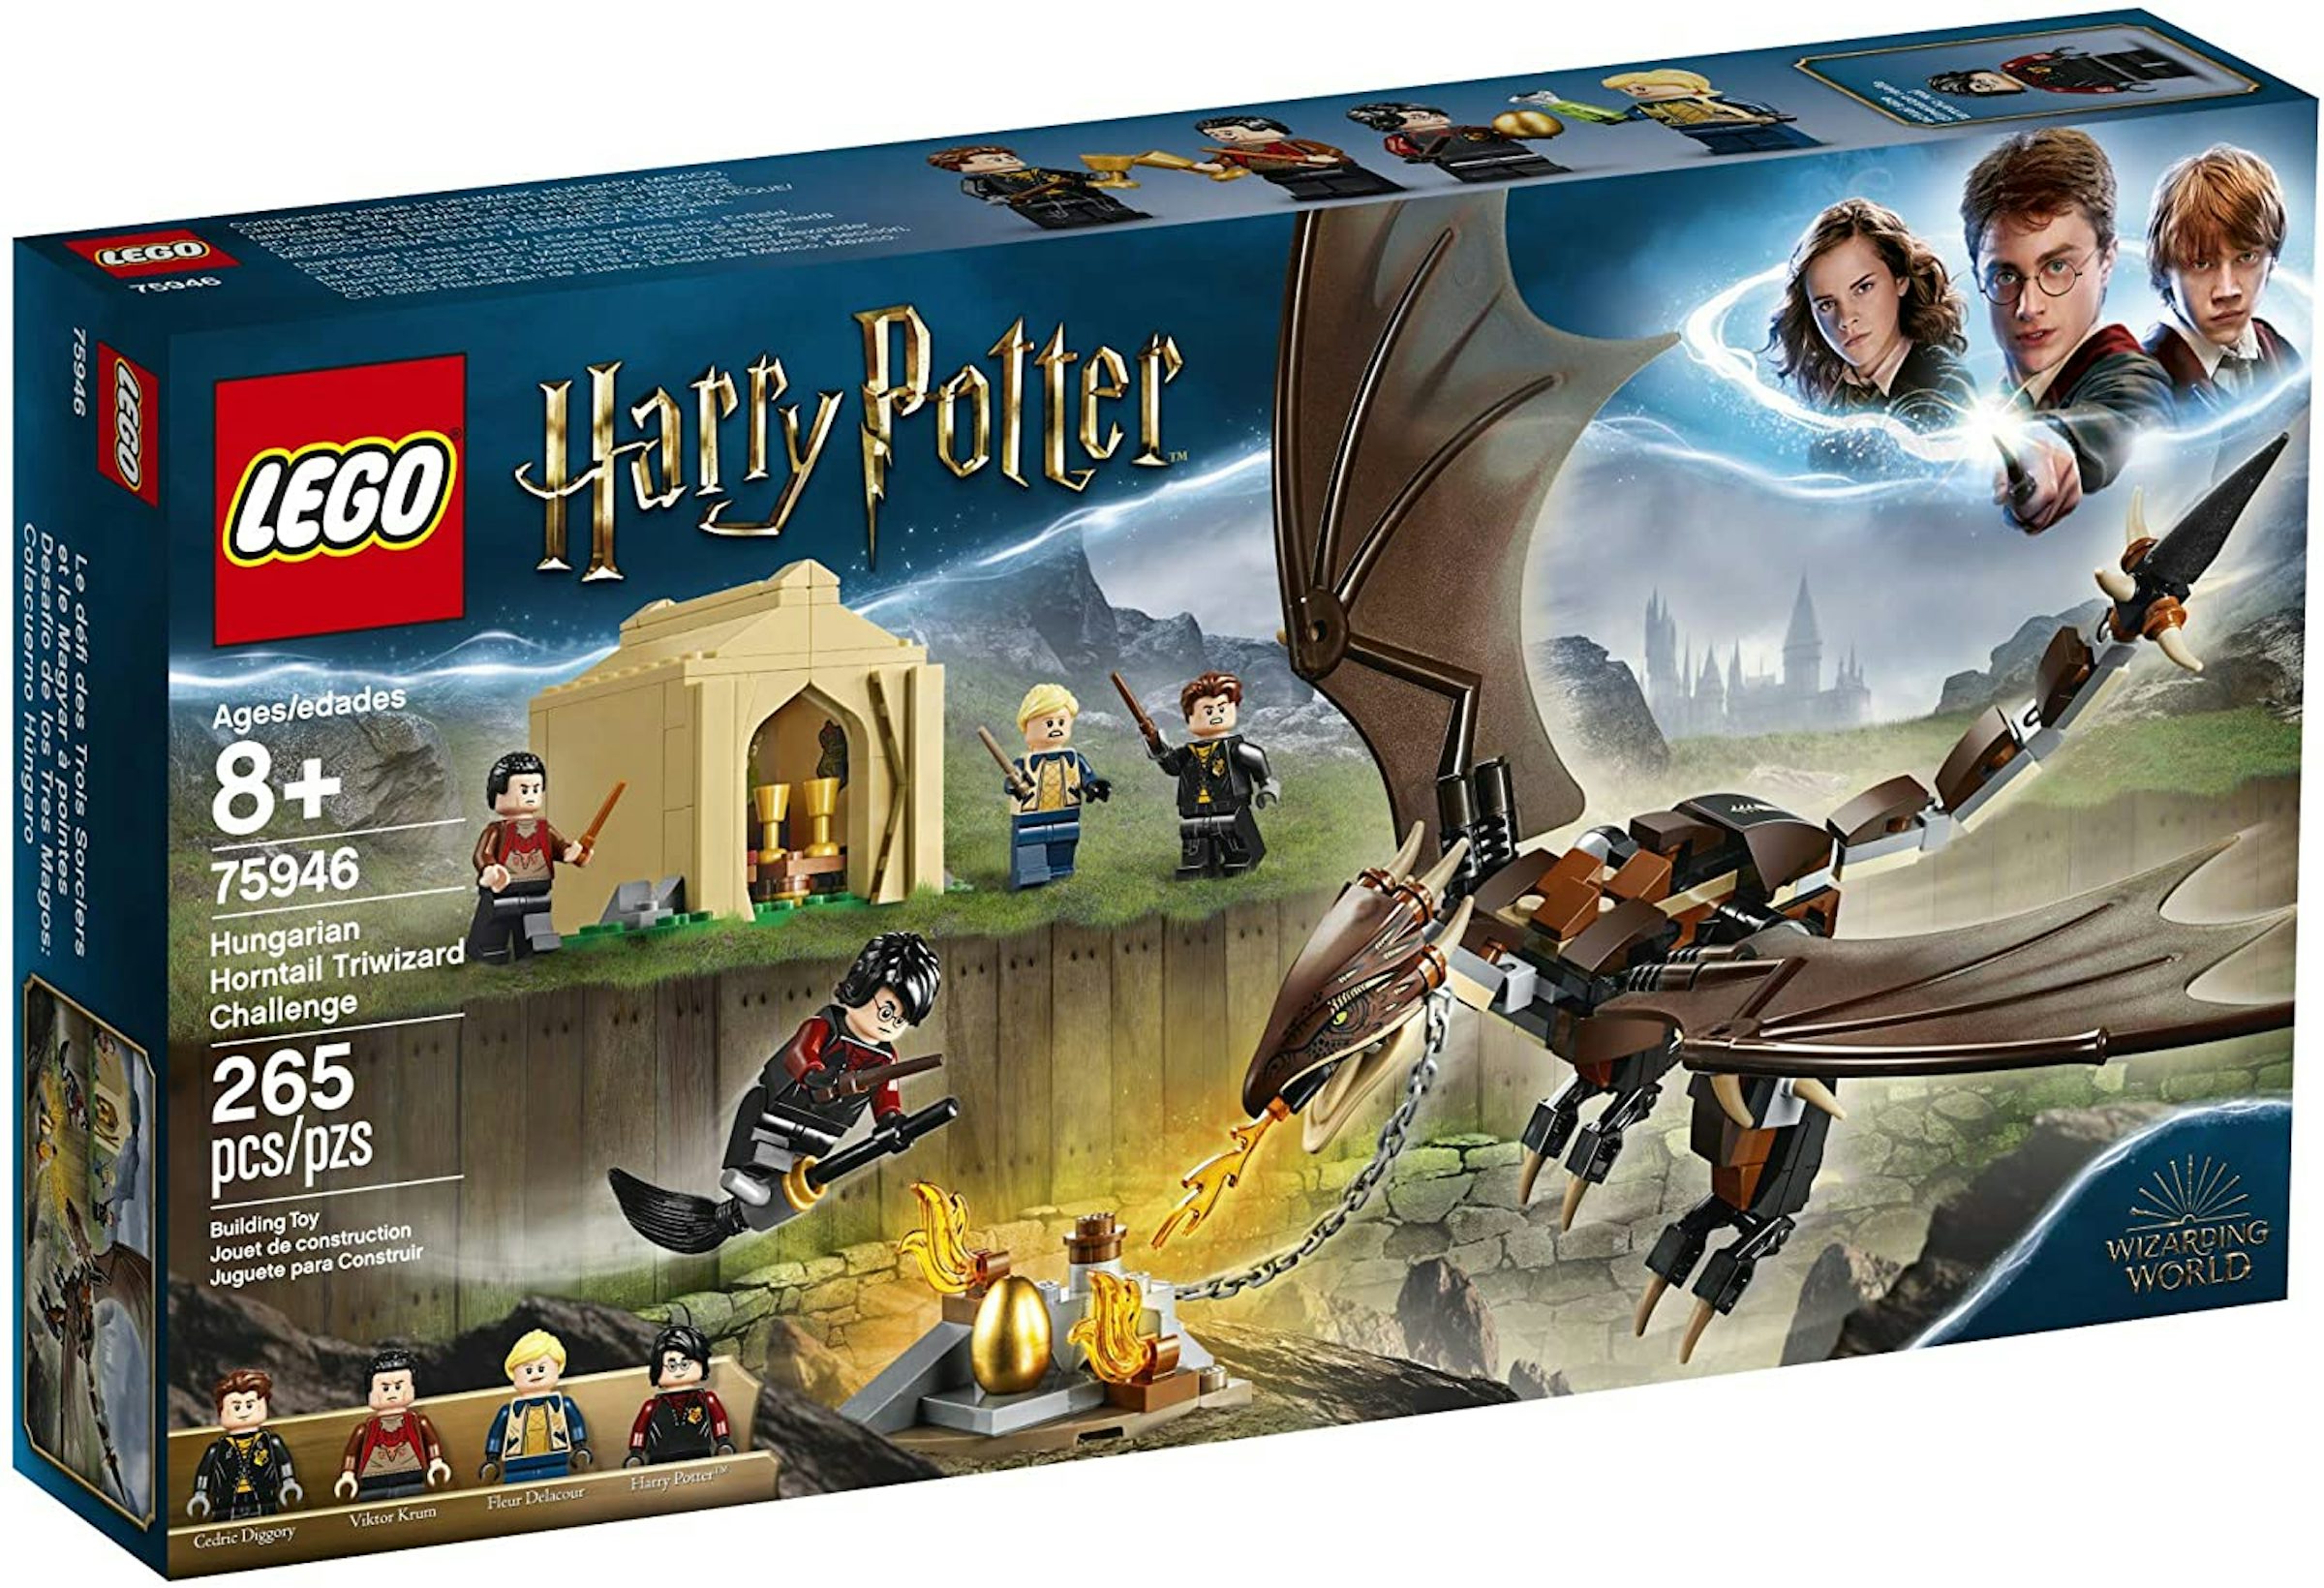 LEGO 76406 Harry Potter Le Magyar à Pointes, Jouet de Dragon